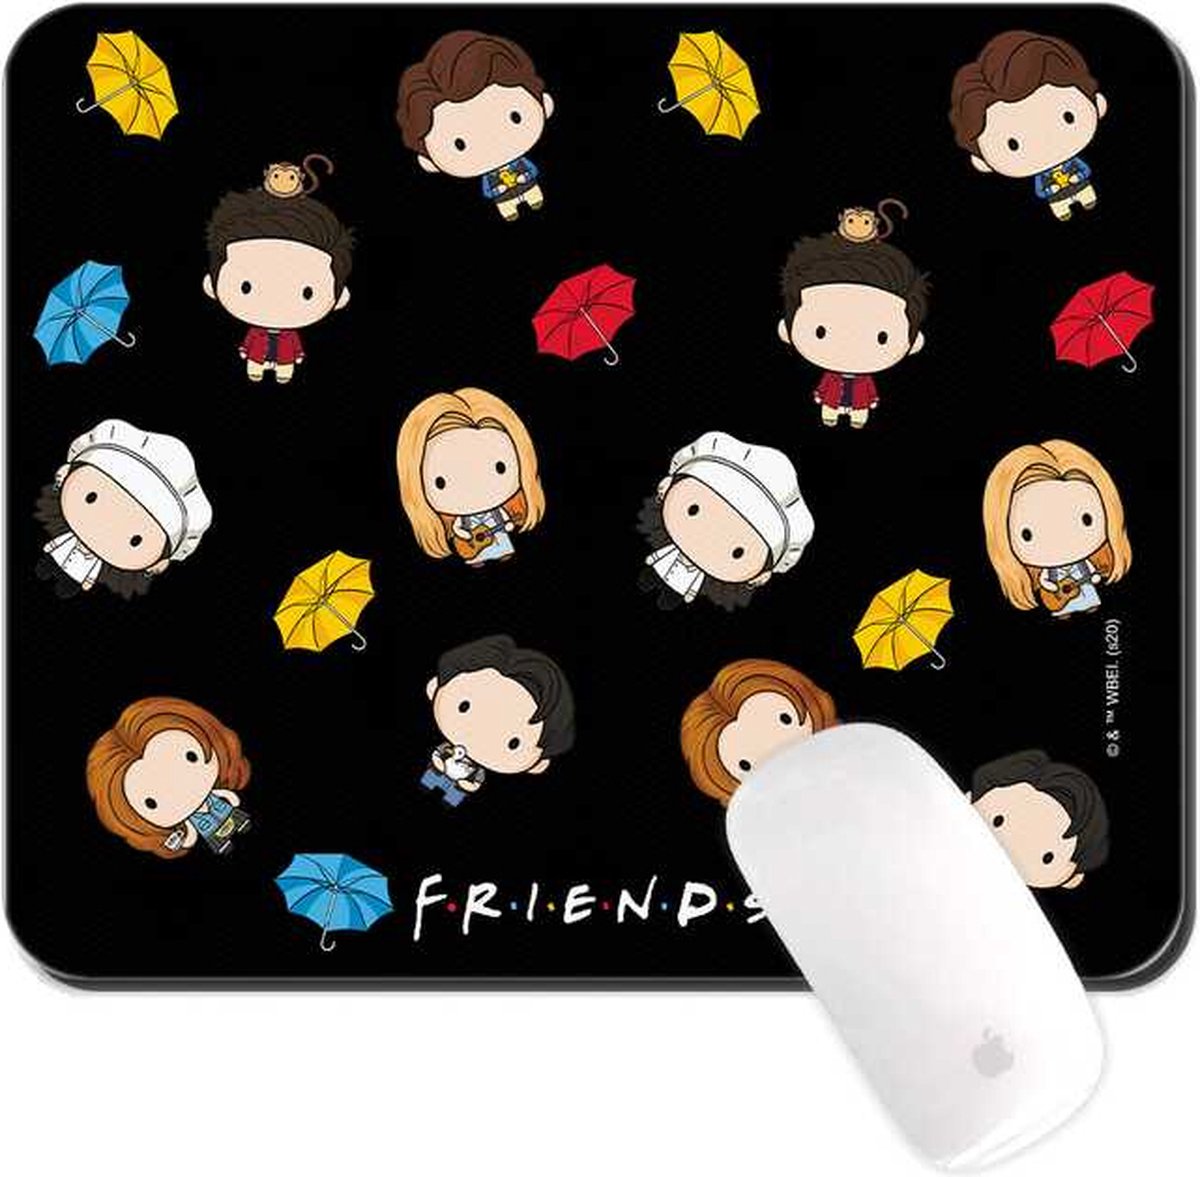 Friends TV serie - Muismat 22x18cm 3mm dik